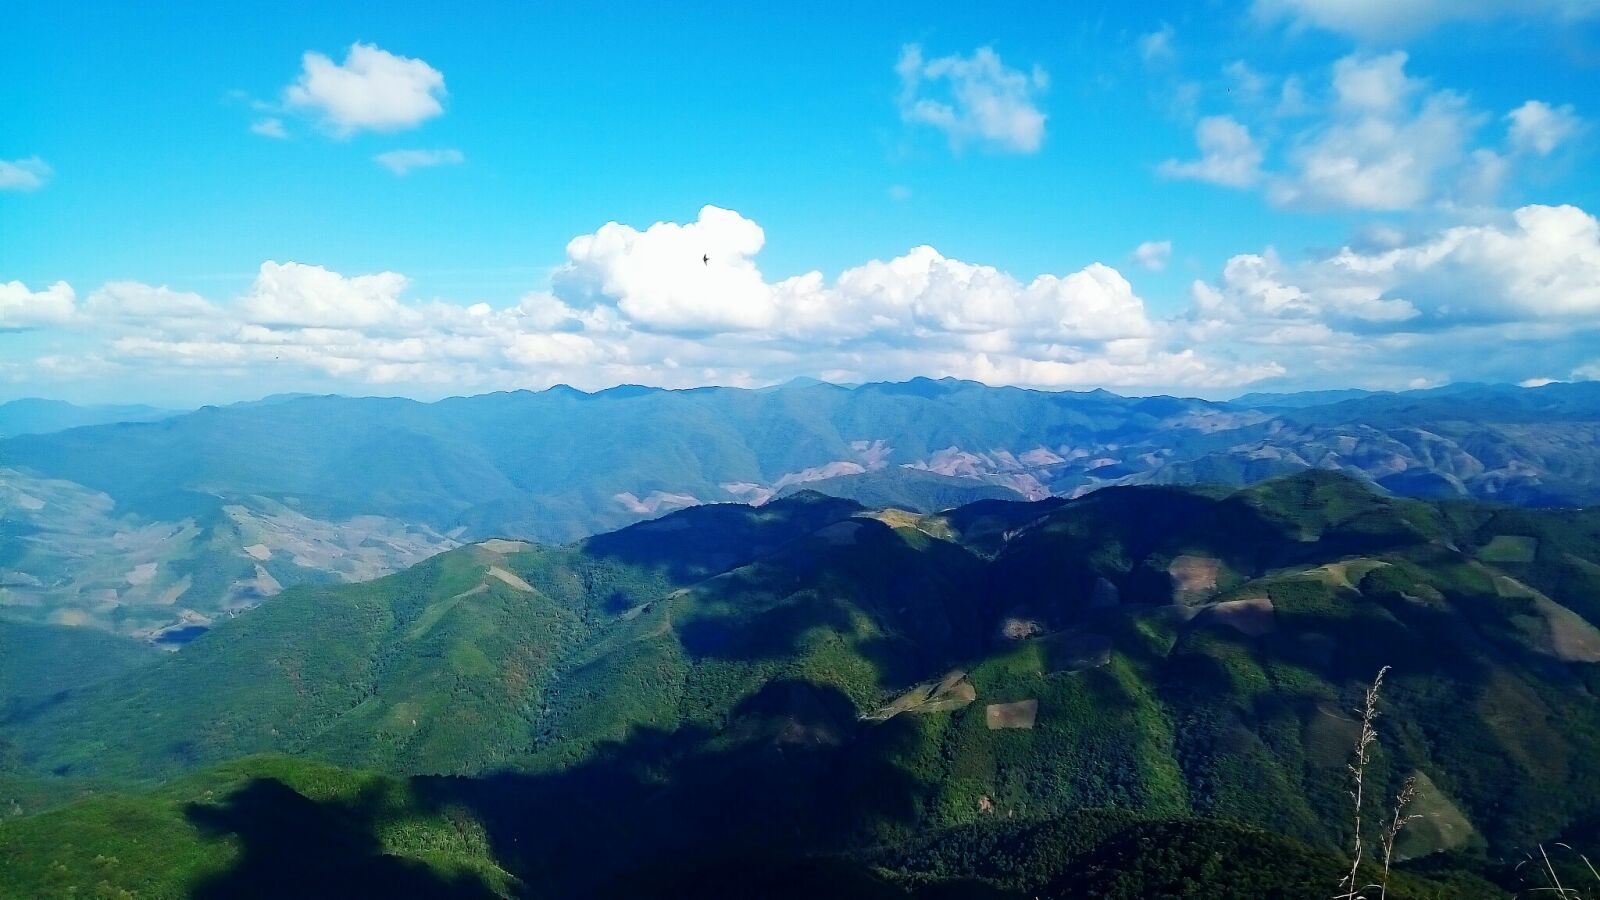 ASUS ZenFone 3 Max (ZC520TL) sample photo. Blue, cloud, landscape, mountain photography